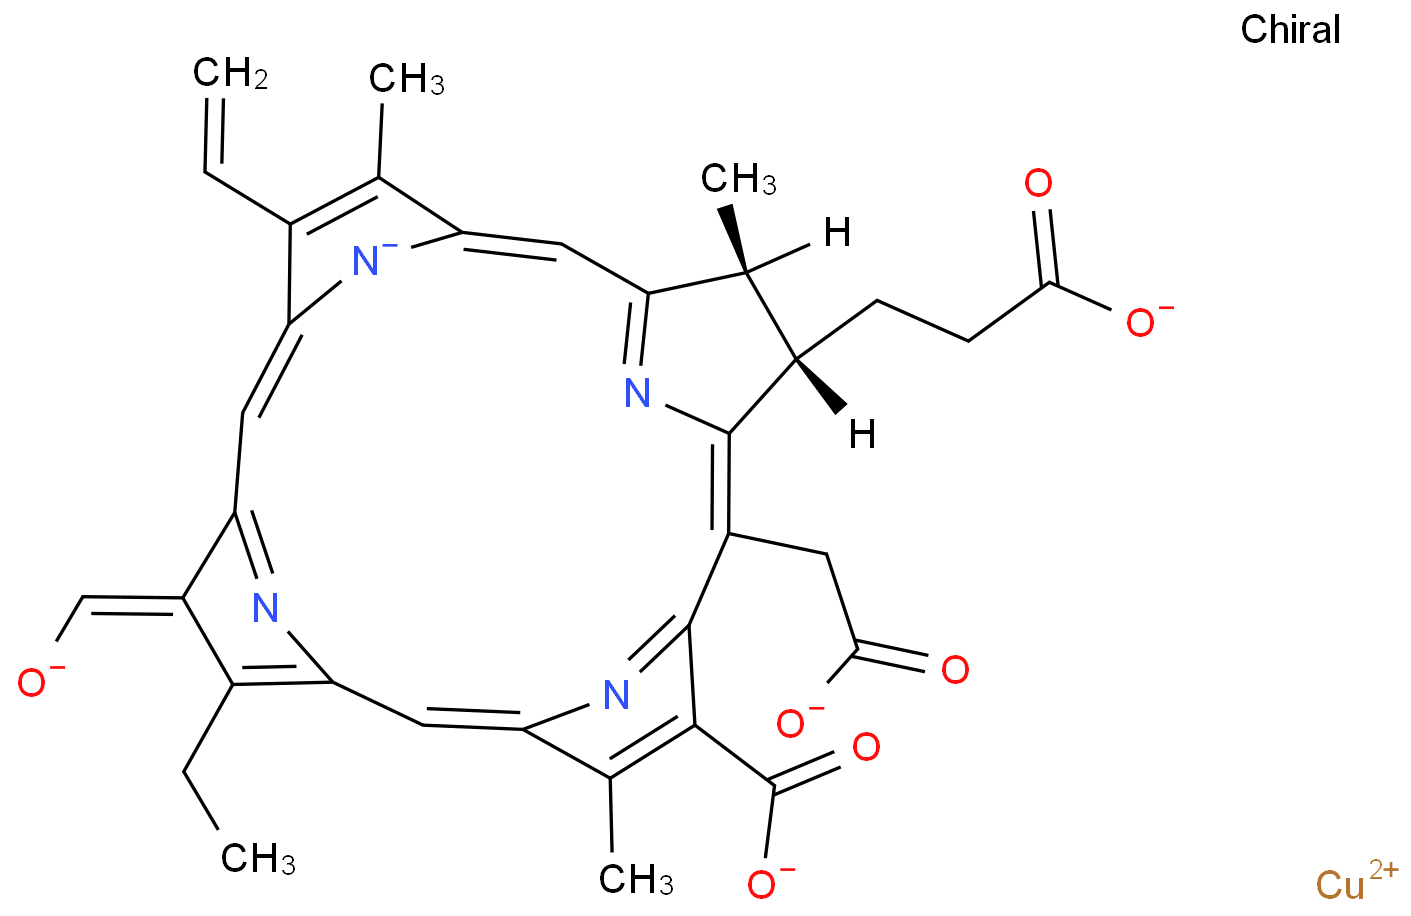 Sodium copper chlorophyllin